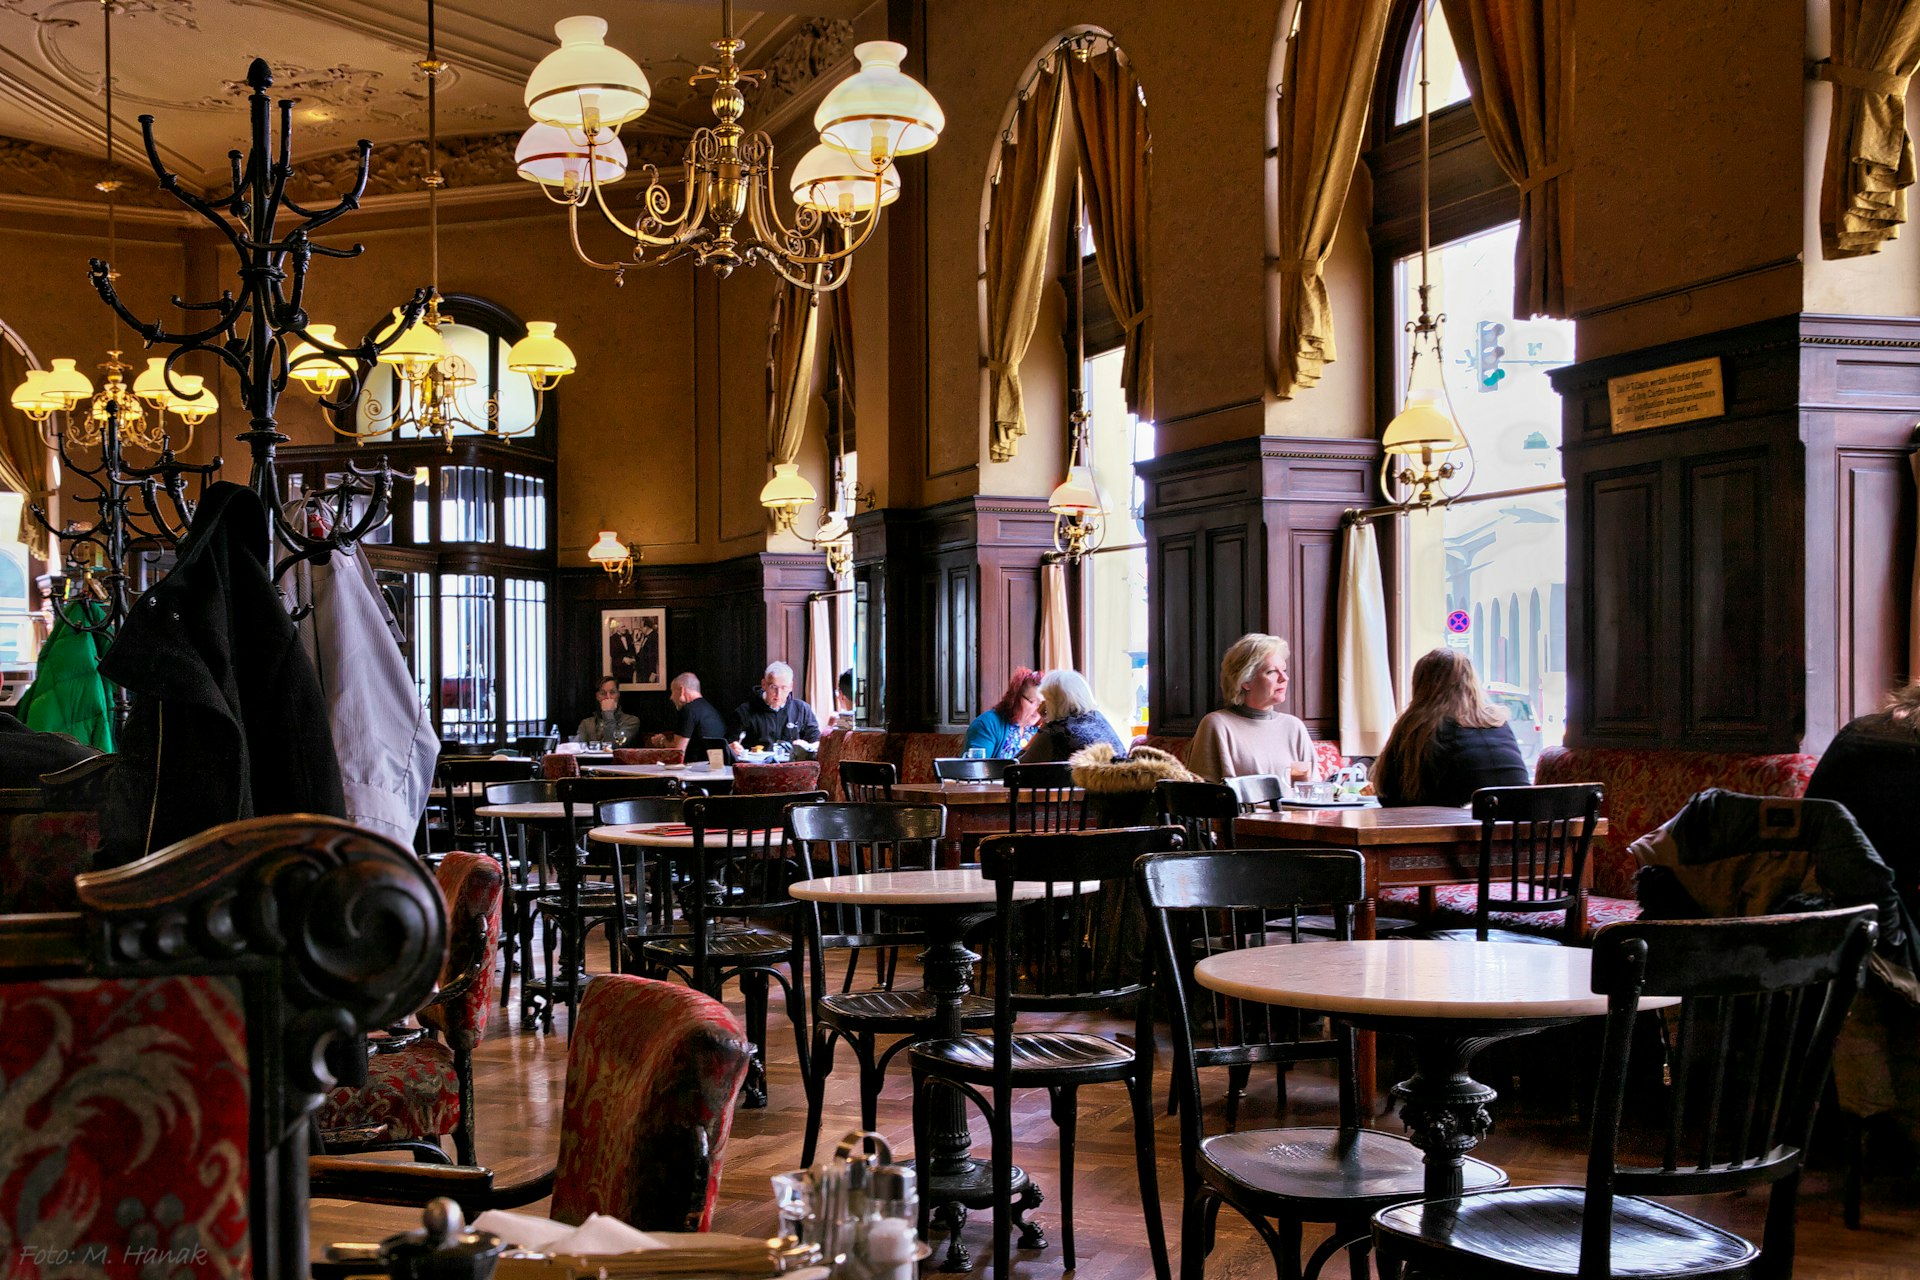 The interior of Cafe Sperl in Vienna, Austria